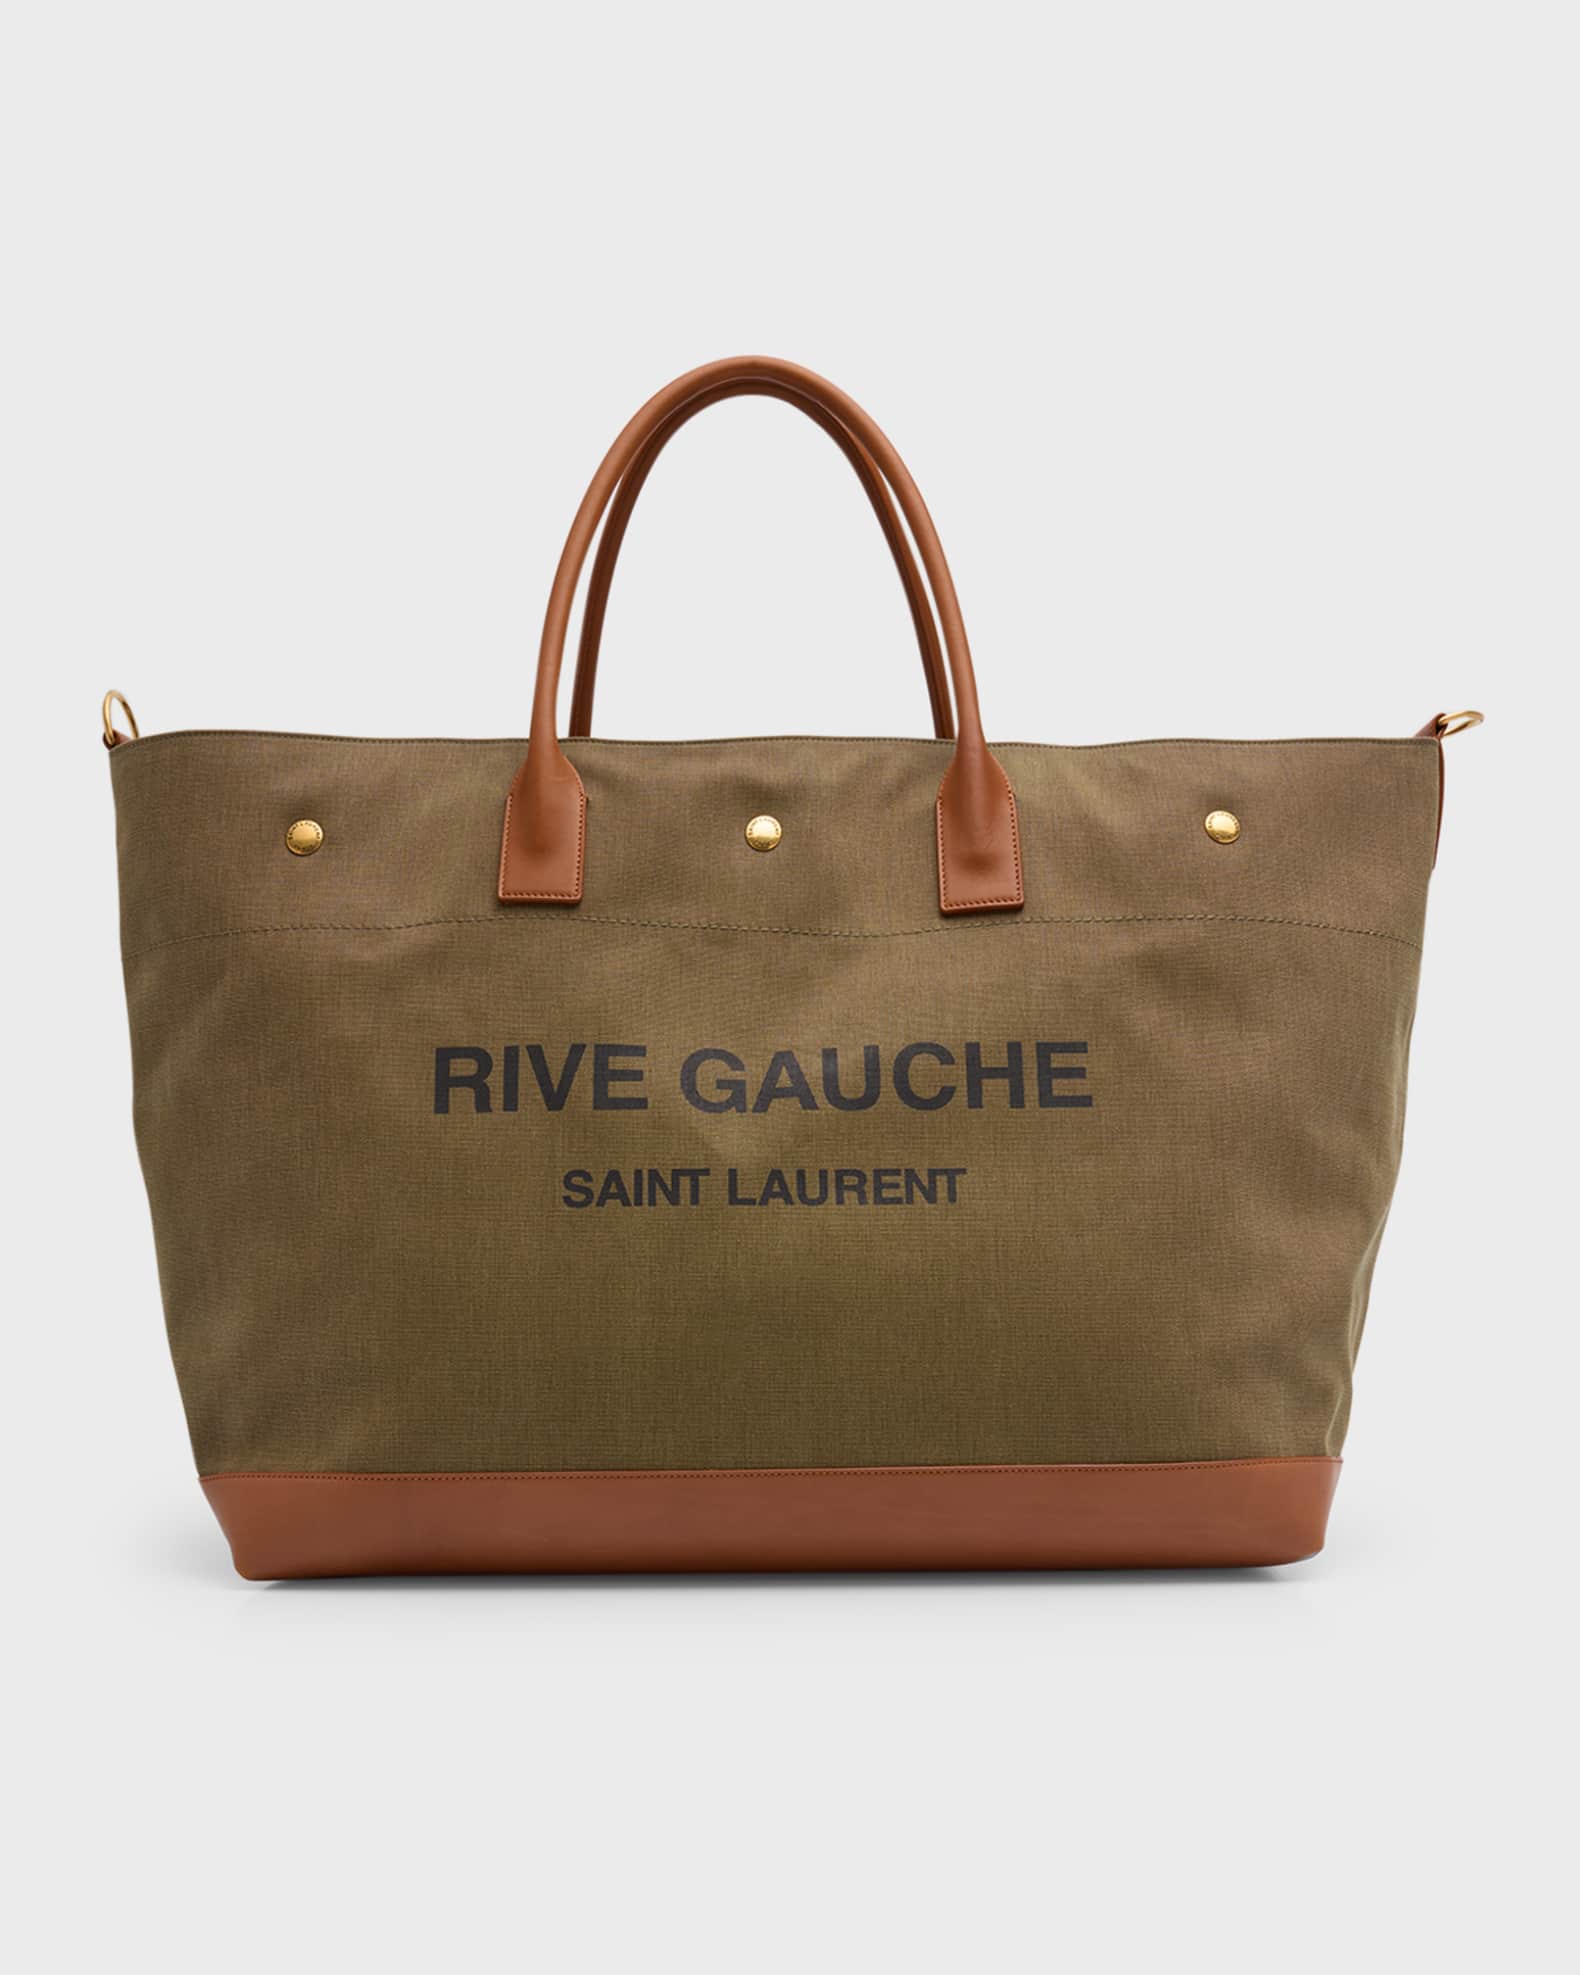 Rive Gauche maxi tote bag, Saint Laurent